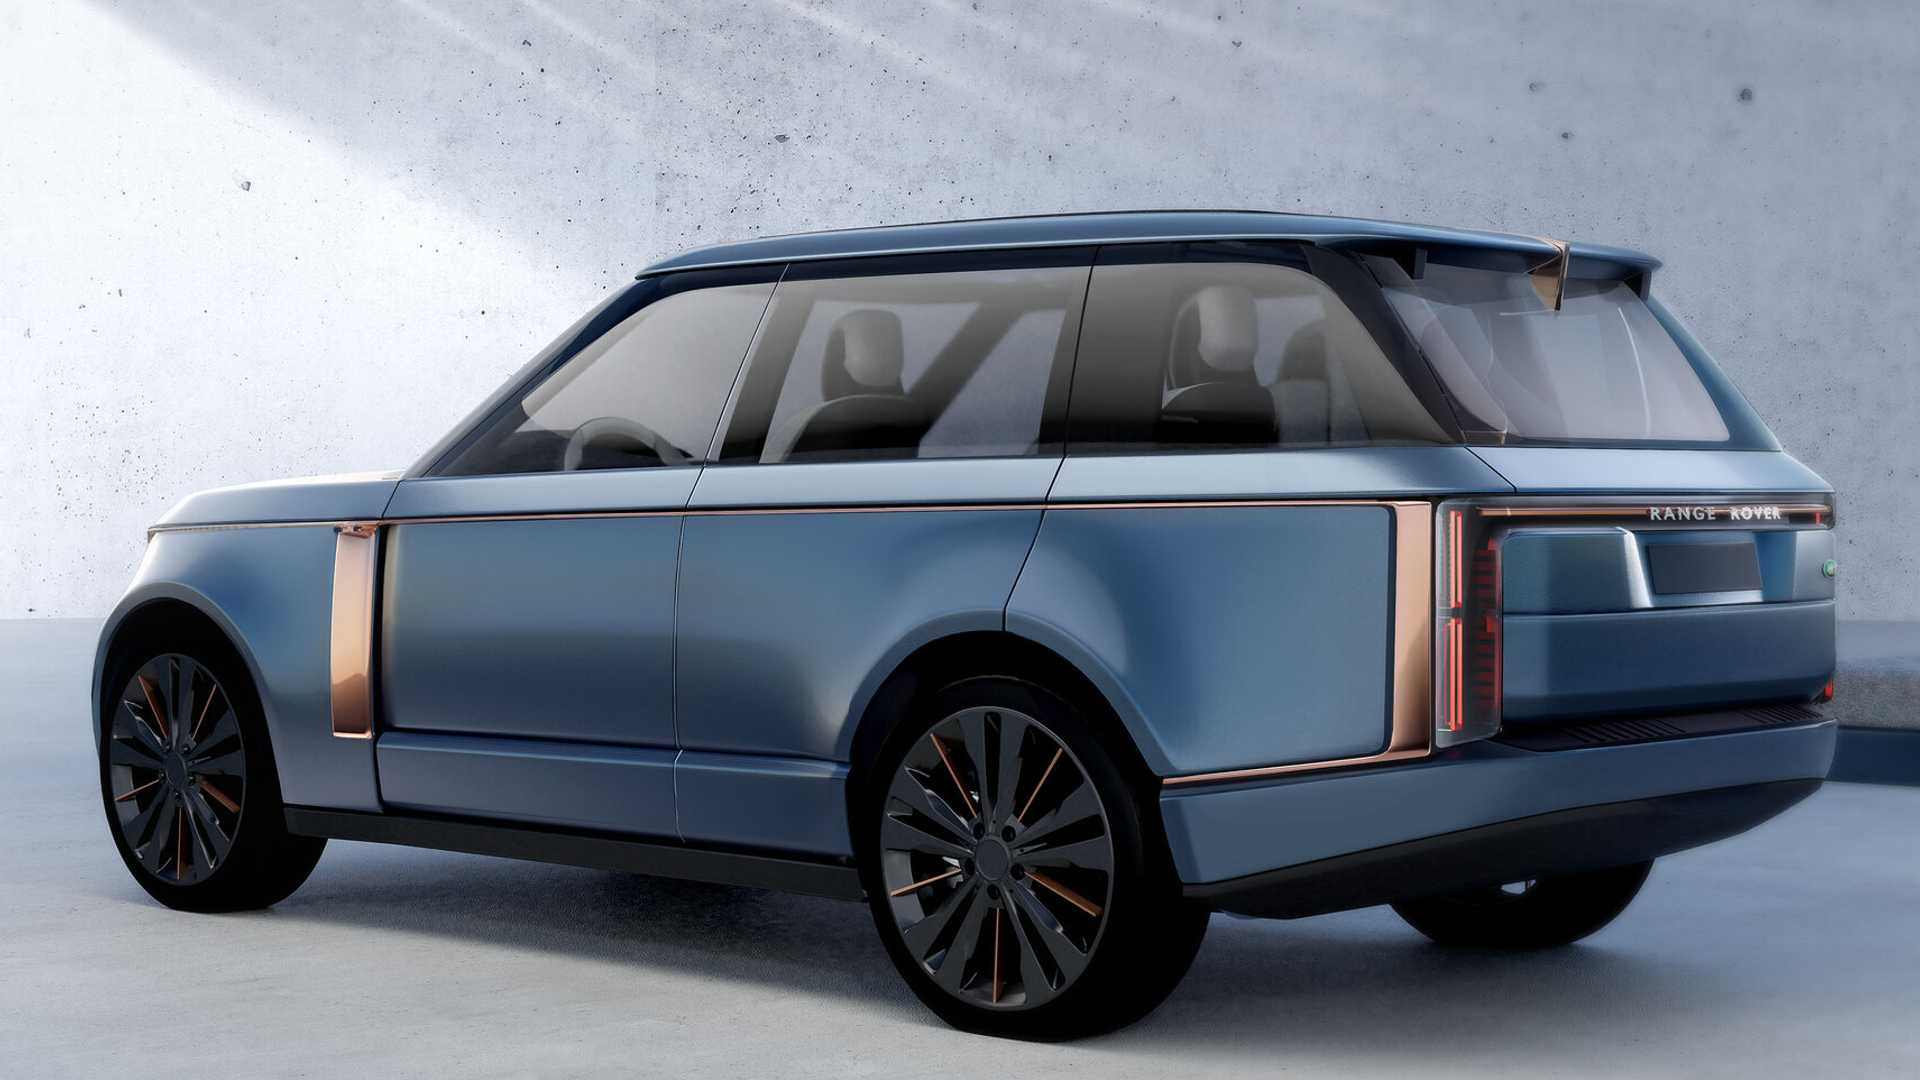 Xem trước Range Rover thế hệ mới - Ước ao thay đổi sau gần 10 năm - Ảnh 2.